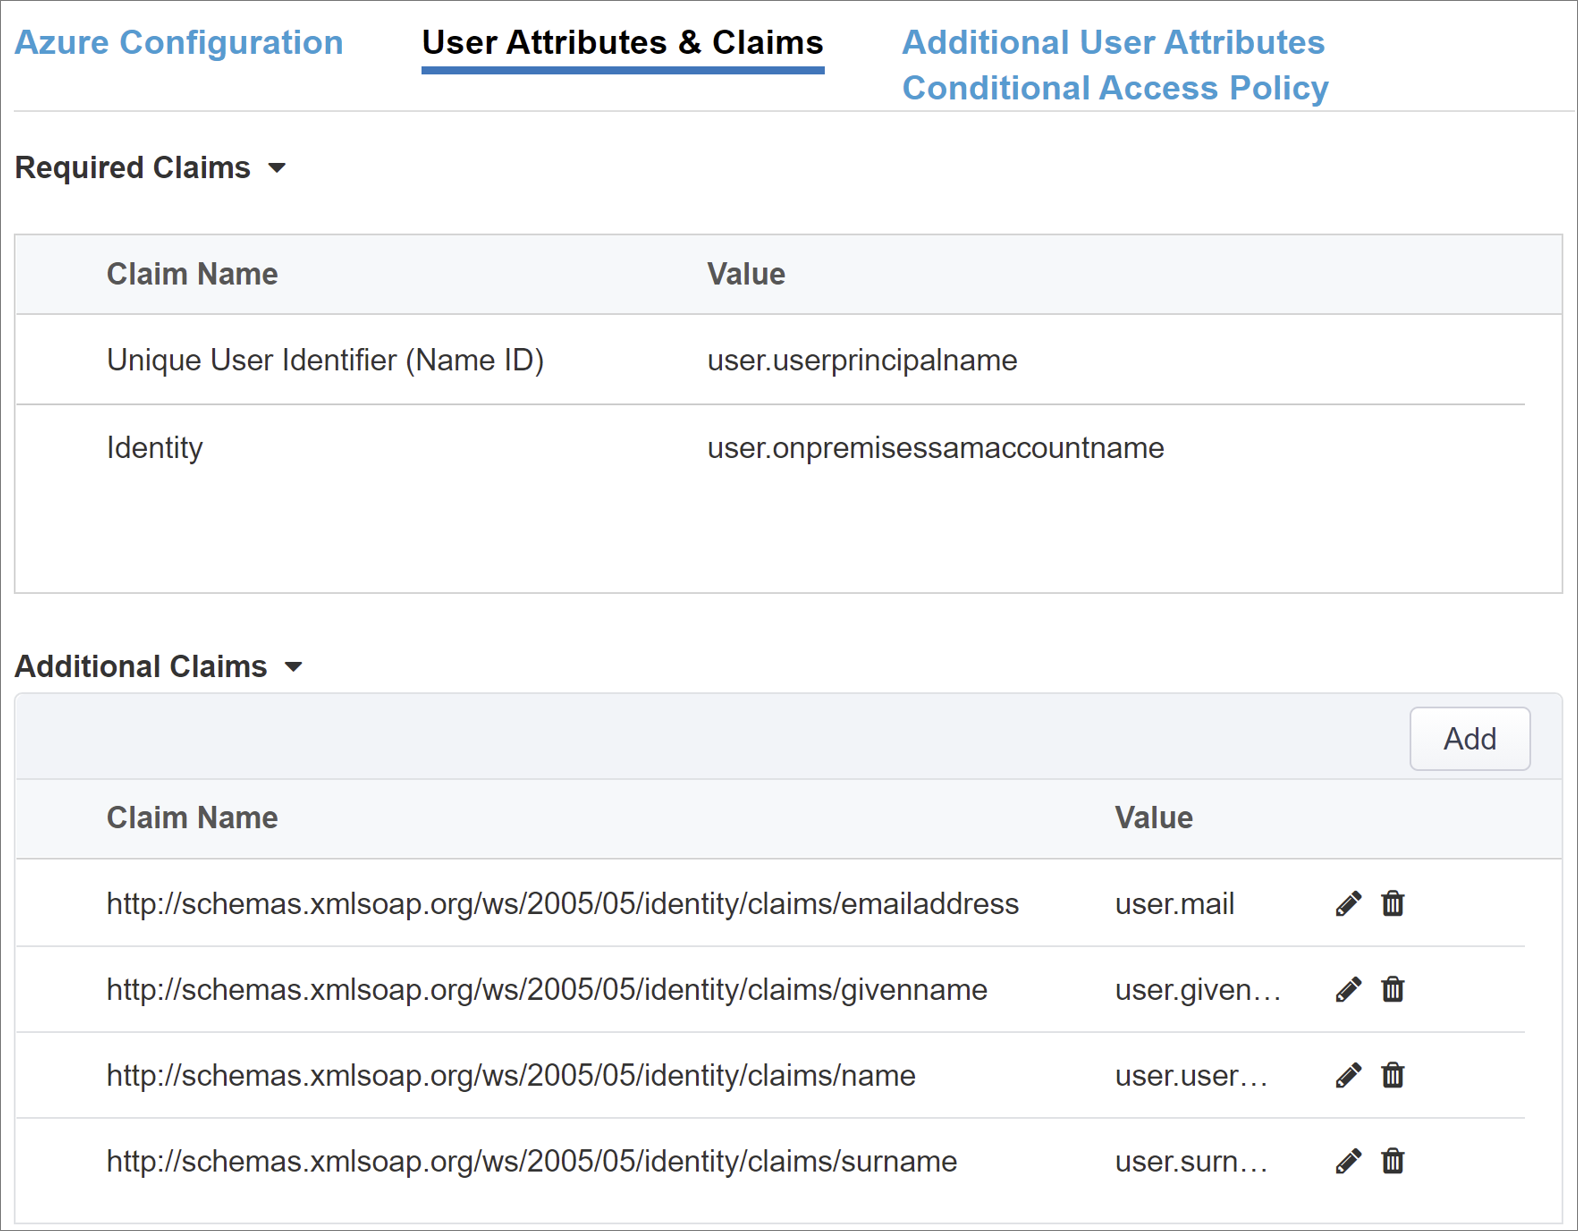 Снимок экрана: параметры и записи для атрибутов пользователей и утверждений.